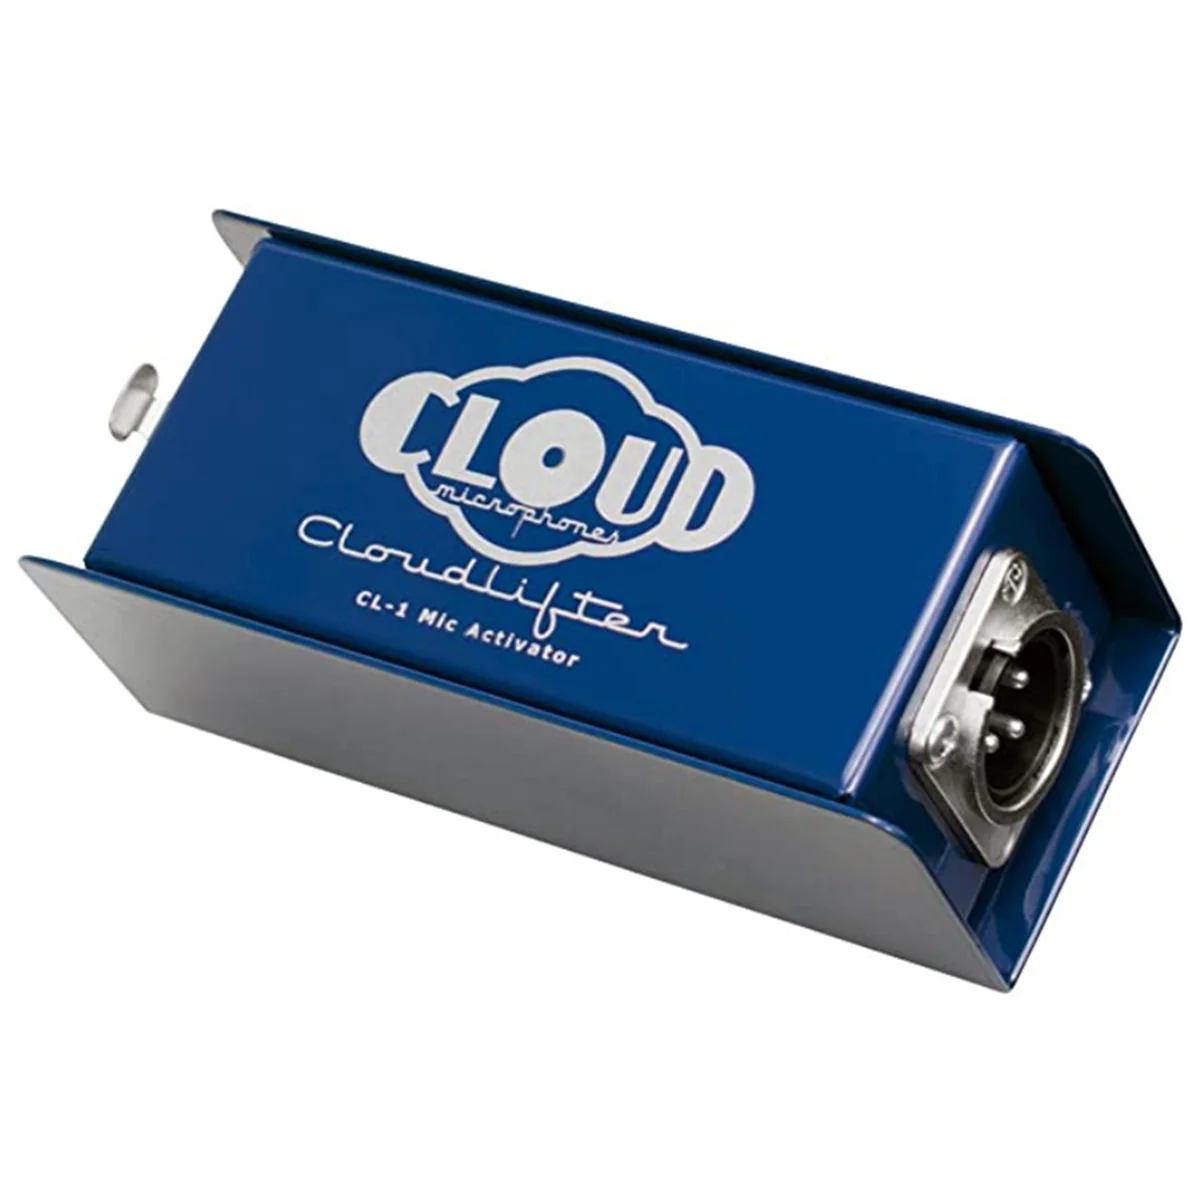 

Облачные микрофоны-Cloudlifter CL-1 микрофон, активатор-Ultra-Clean микрофонный предусилитель Gain